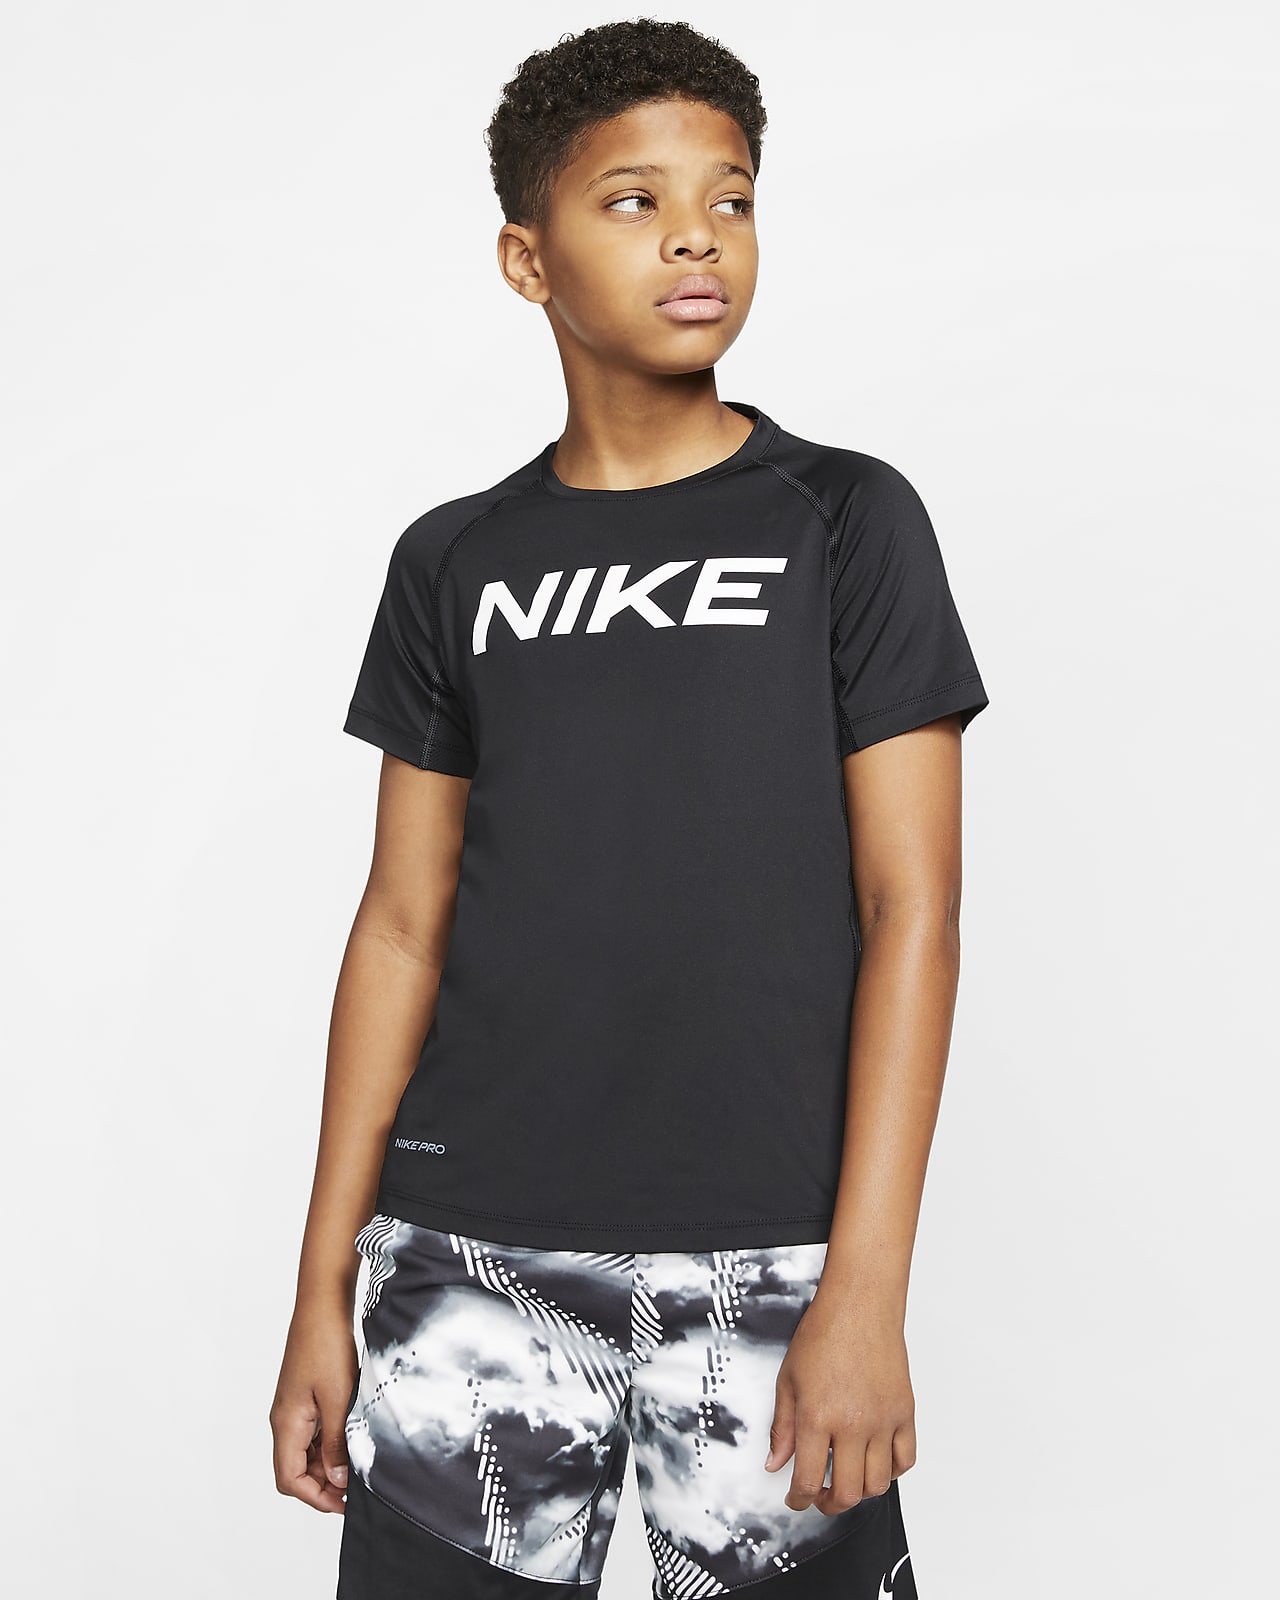 เสื้อเทรนนิ่งแขนสั้นเด็กโต Nike Pro (ชาย)